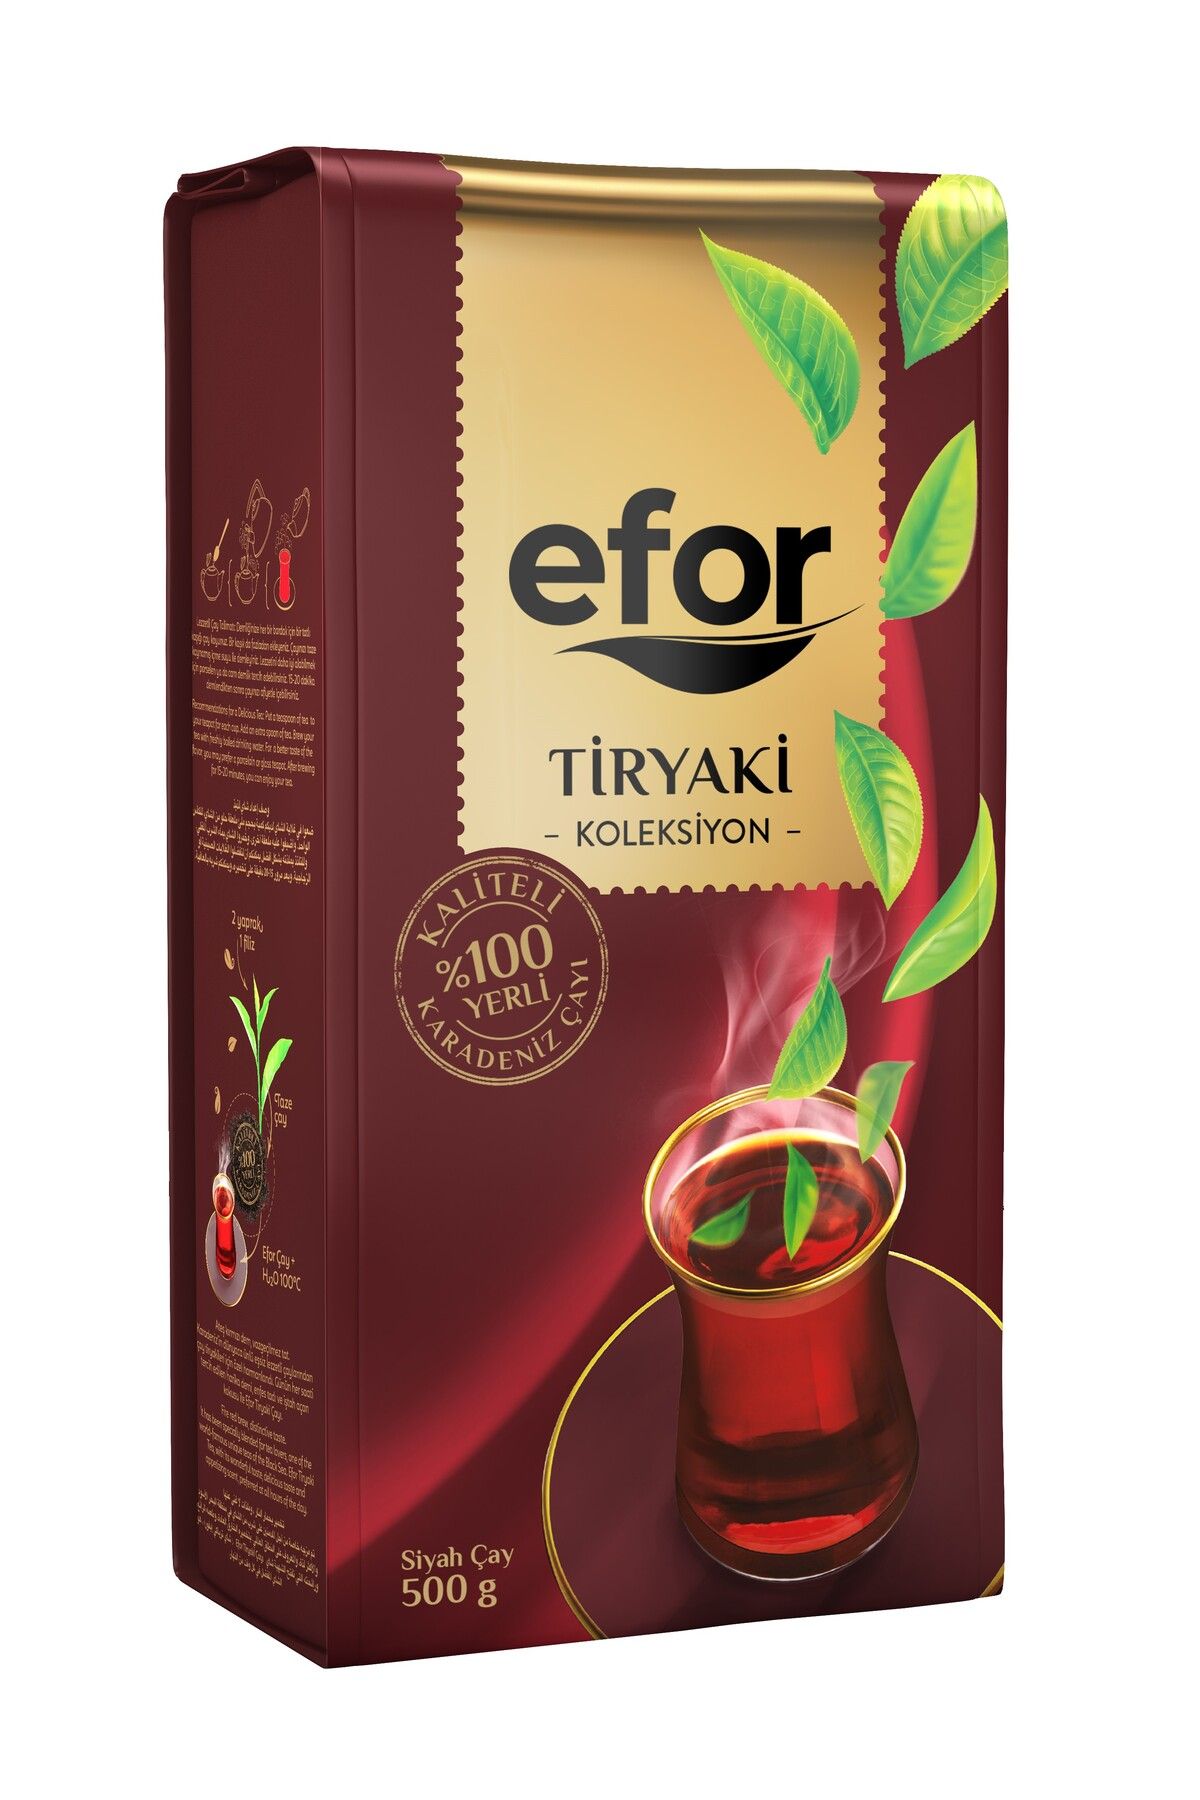 Efor Tiryaki Dökme Siyah Çay - 500 gr